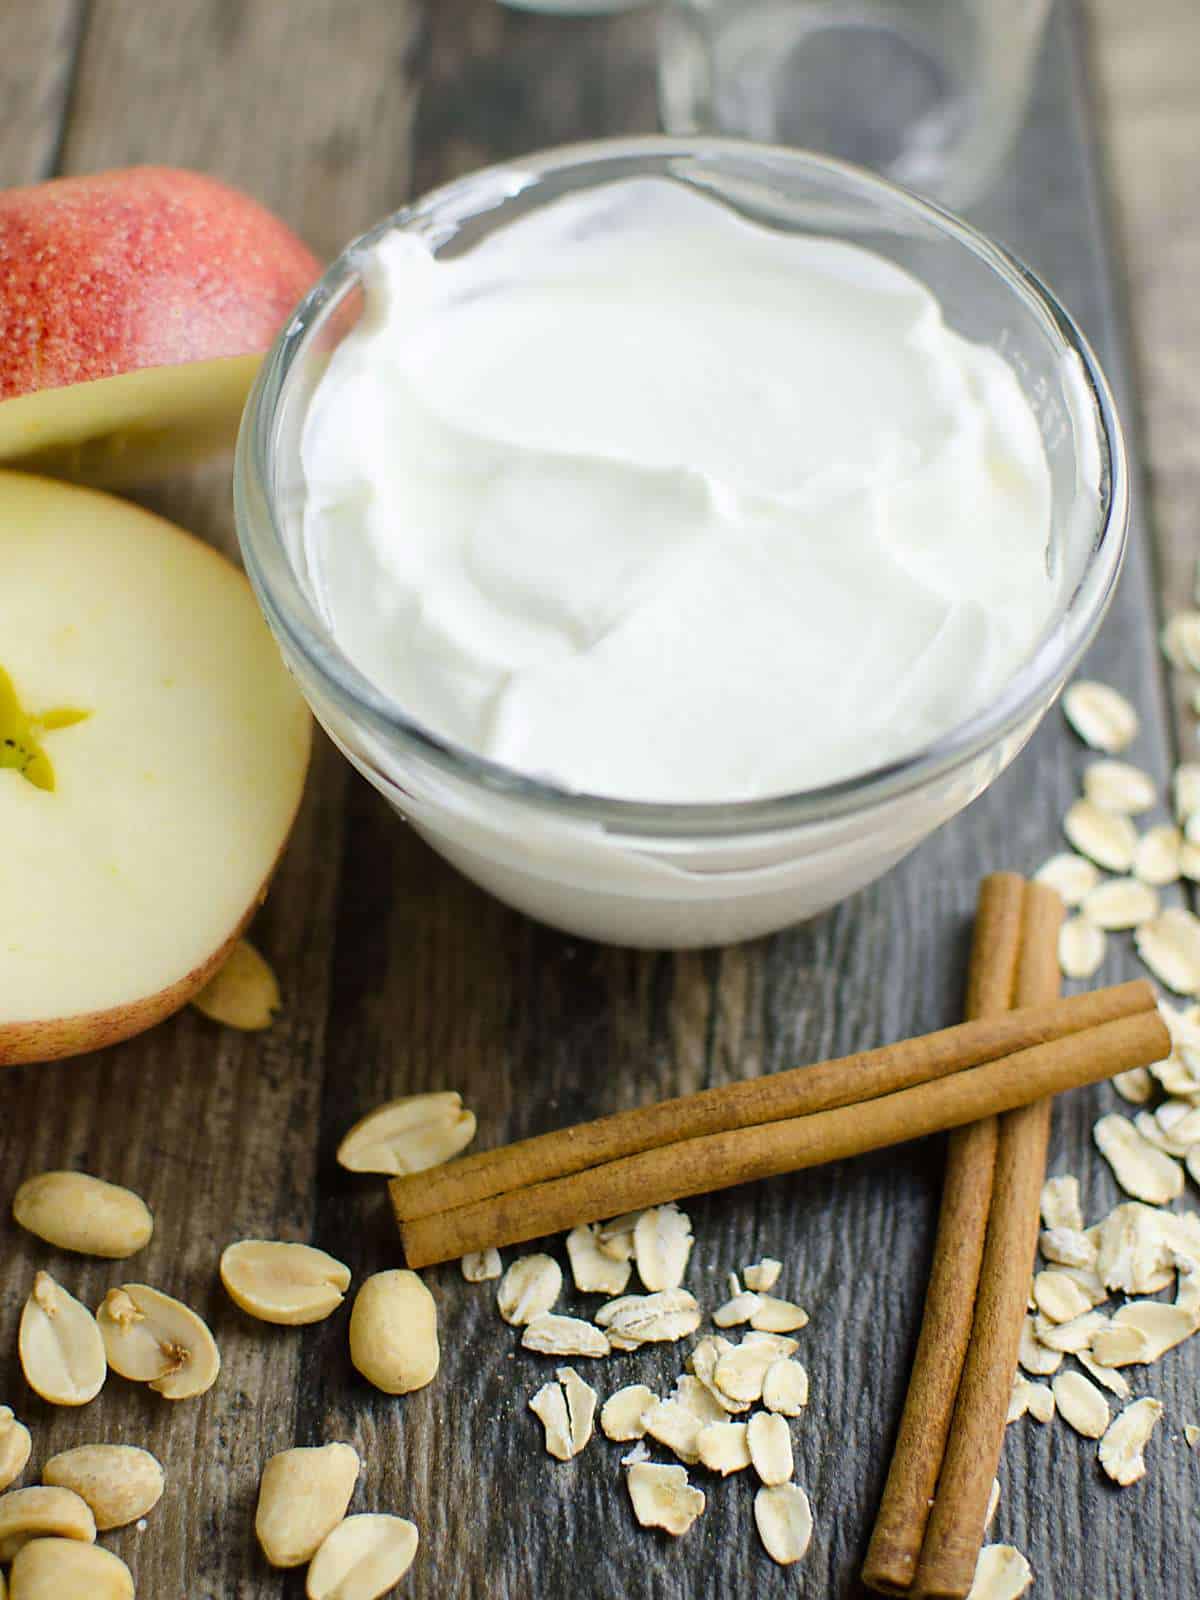 healthy apple pie smoothie ingredients: yogurt, apples, oats, and cinnamon.